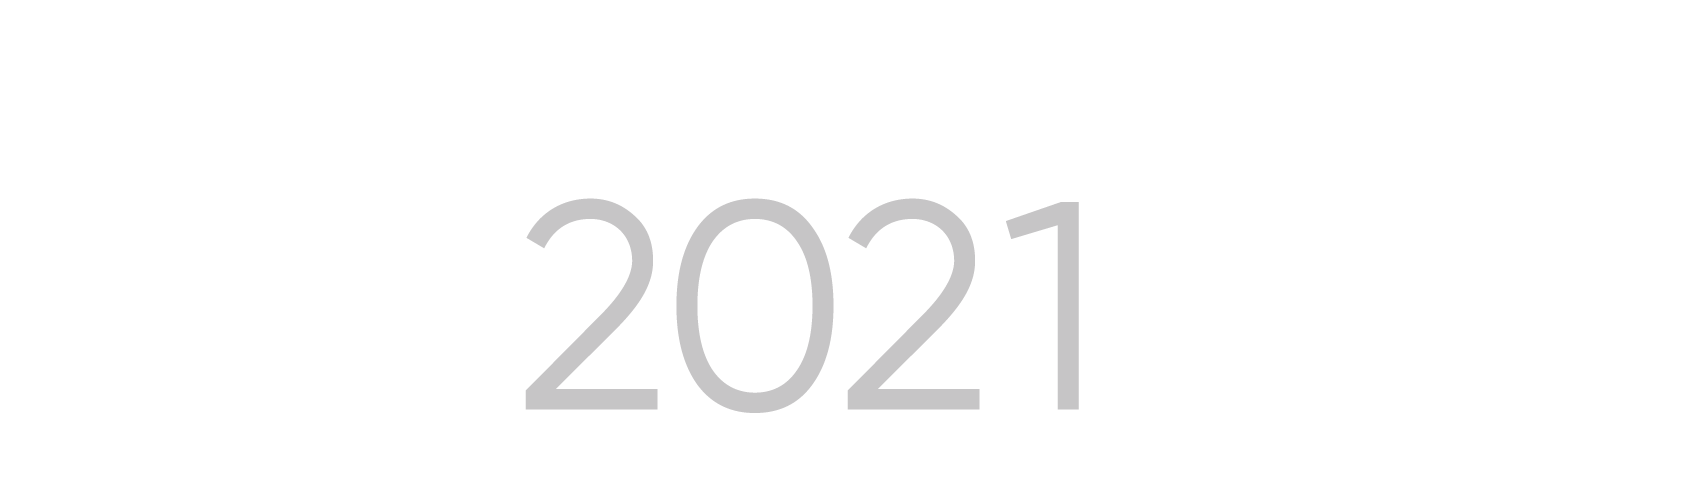 EPA 2021